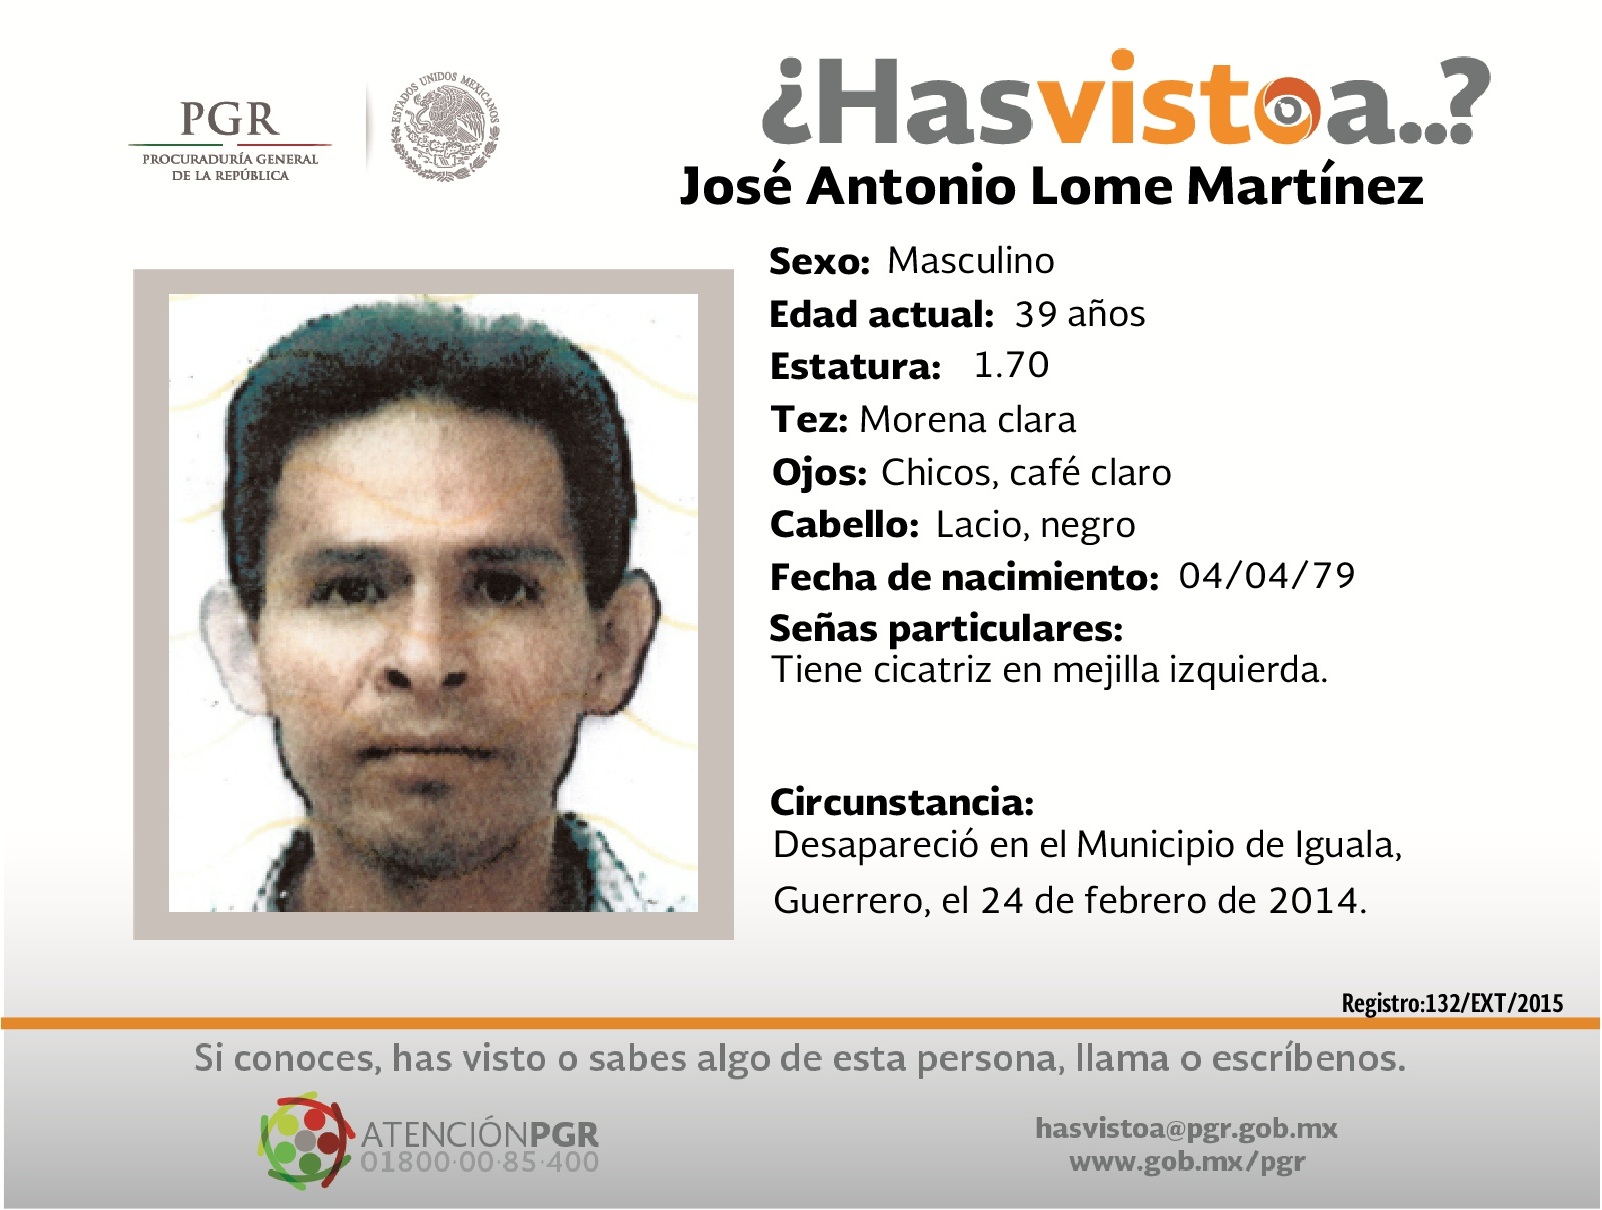 #SeBusca Ayúdanos a localizar a José Antonio Lome